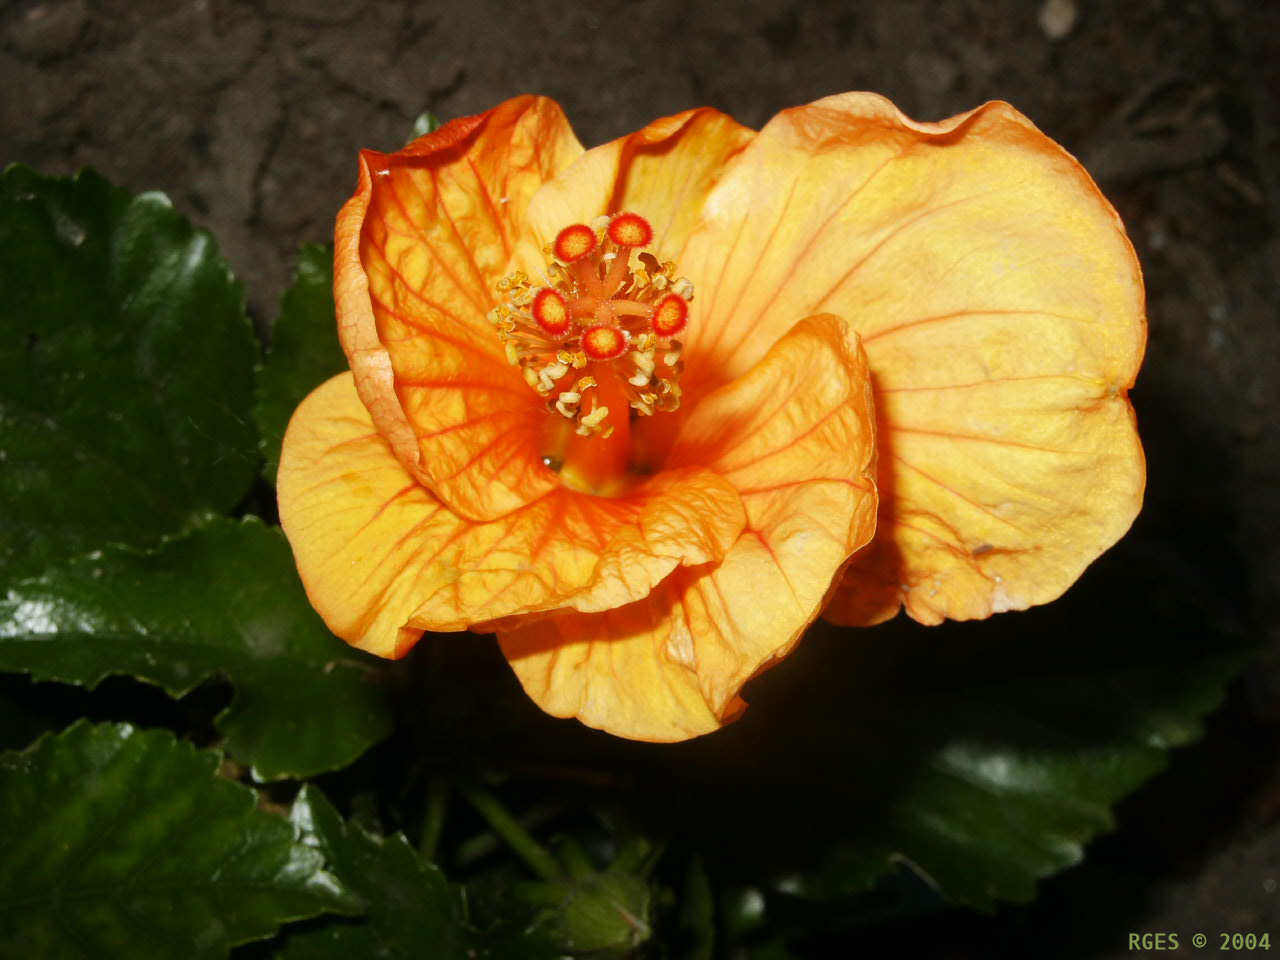 Orange Hibiscus flower [NL 2004] © RGES